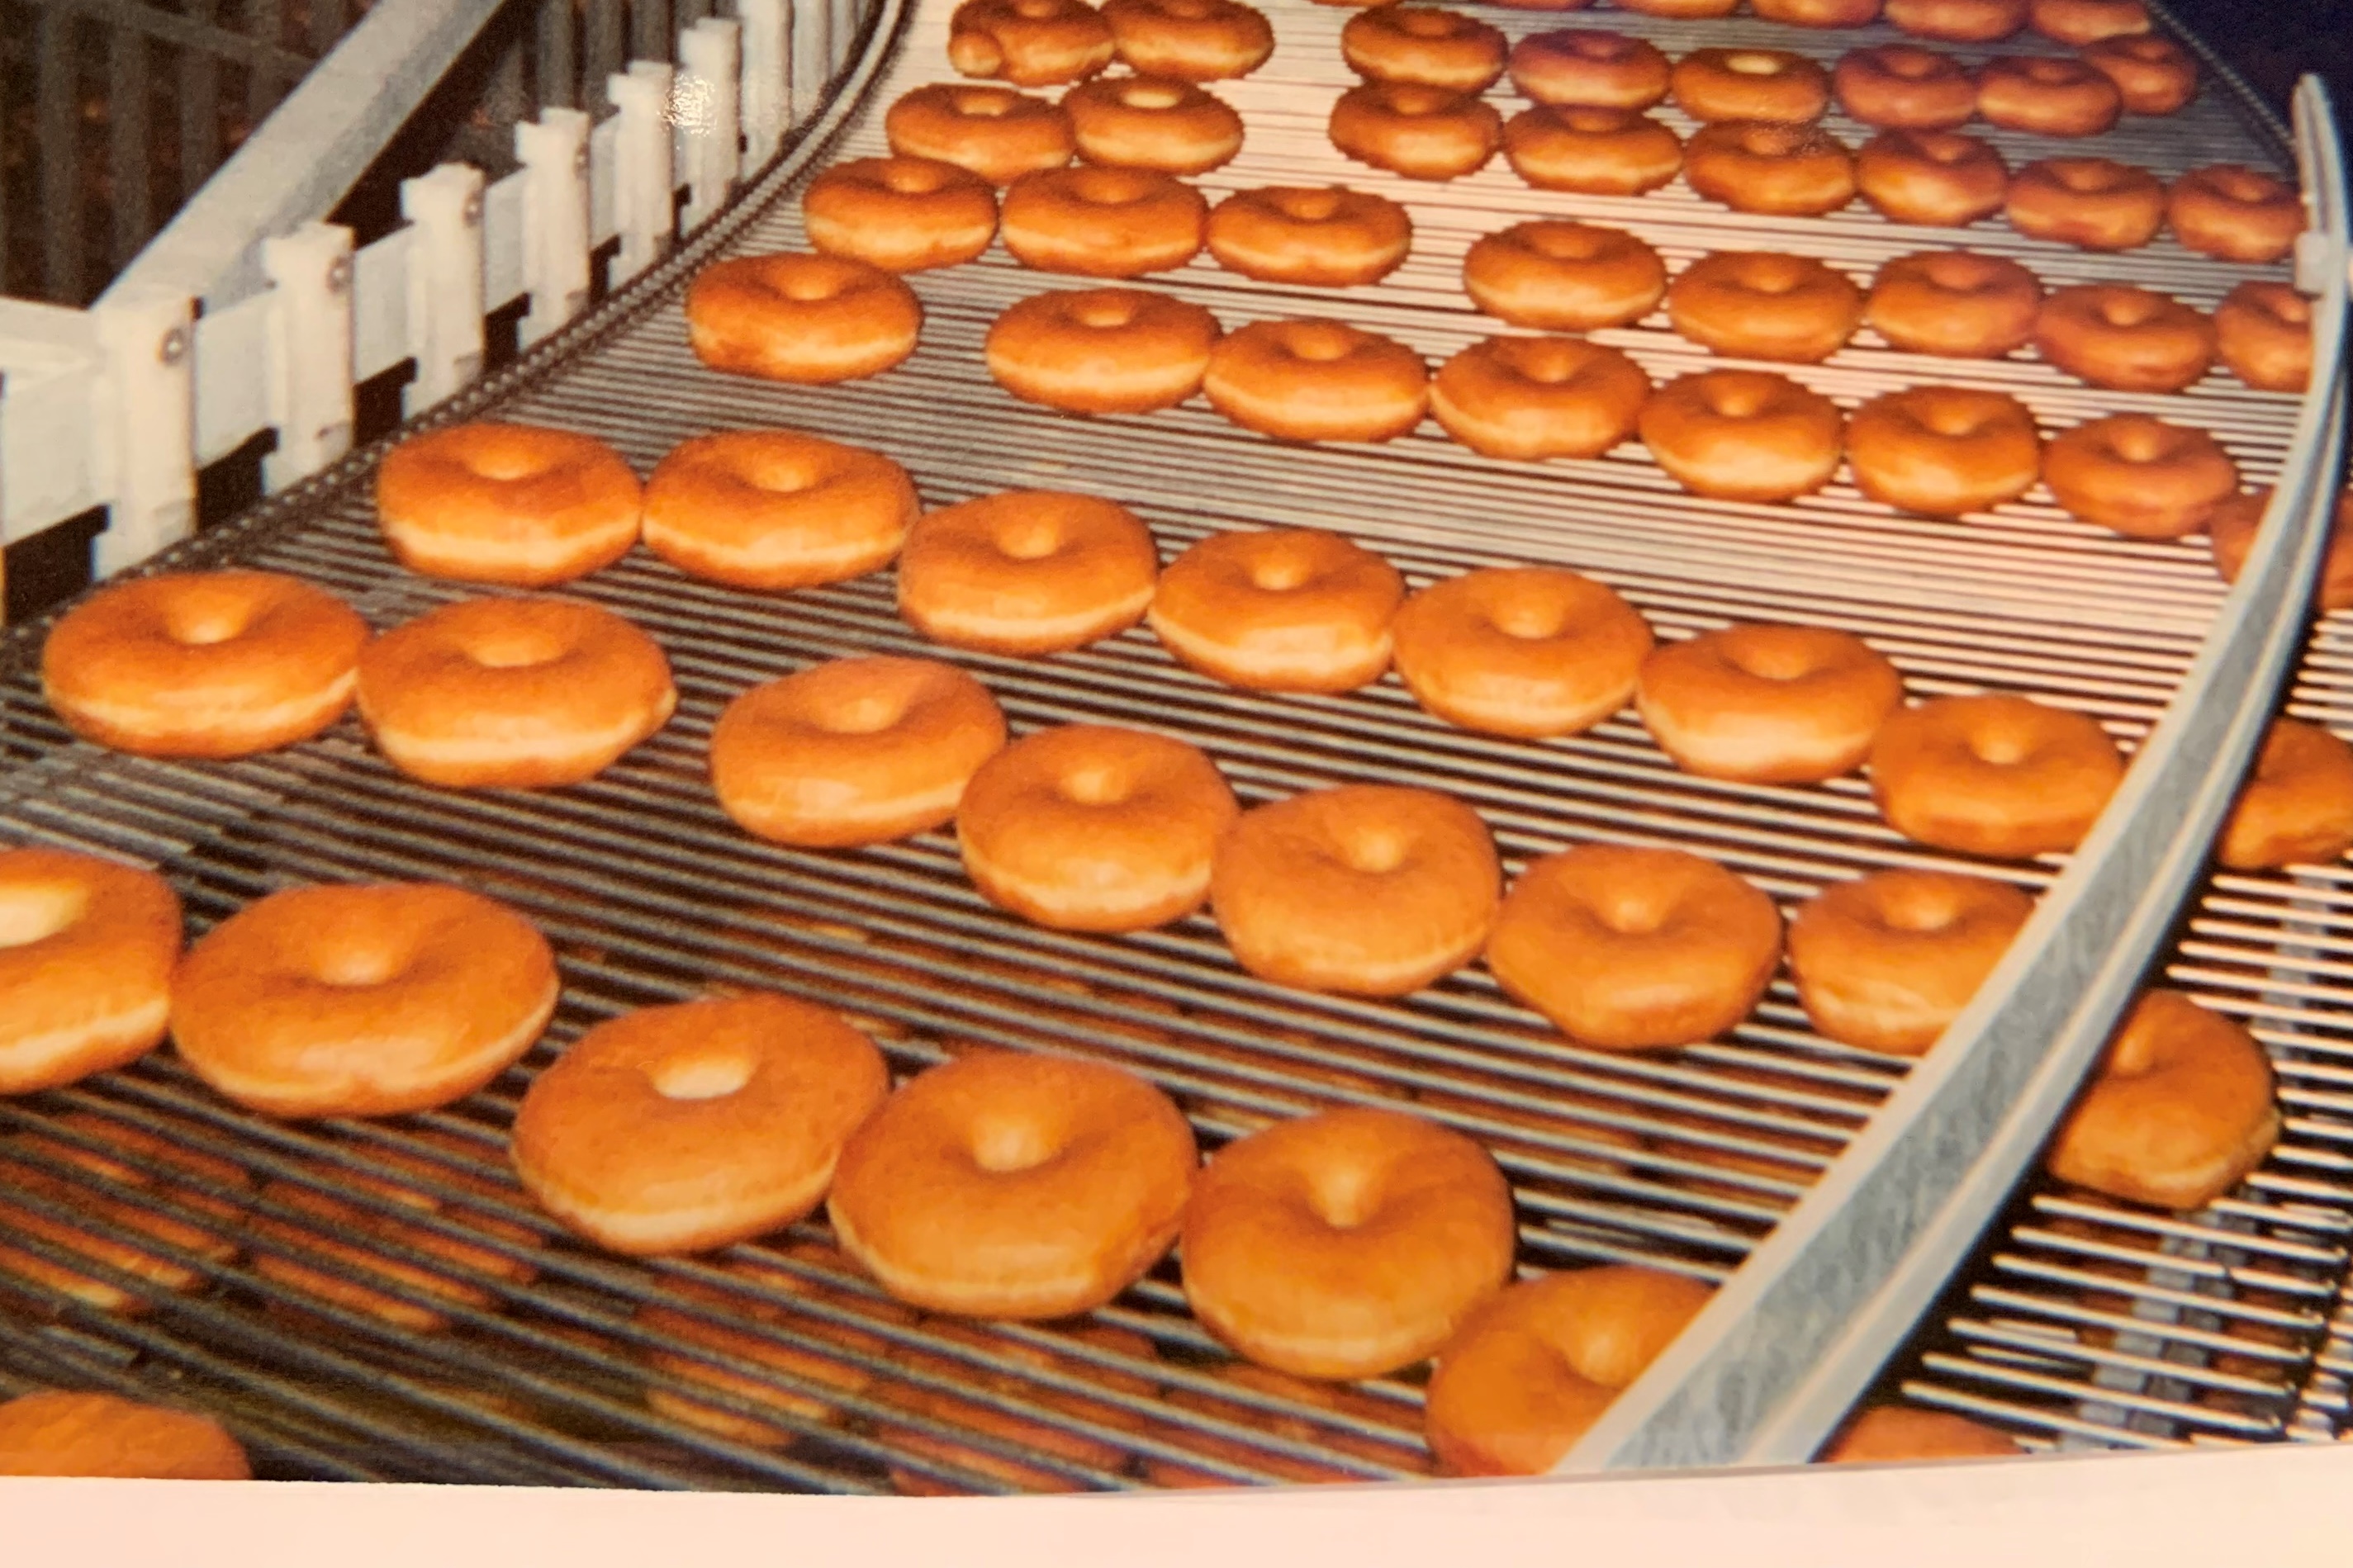 Plain Donuts on an Ultra Series Spiral Belt